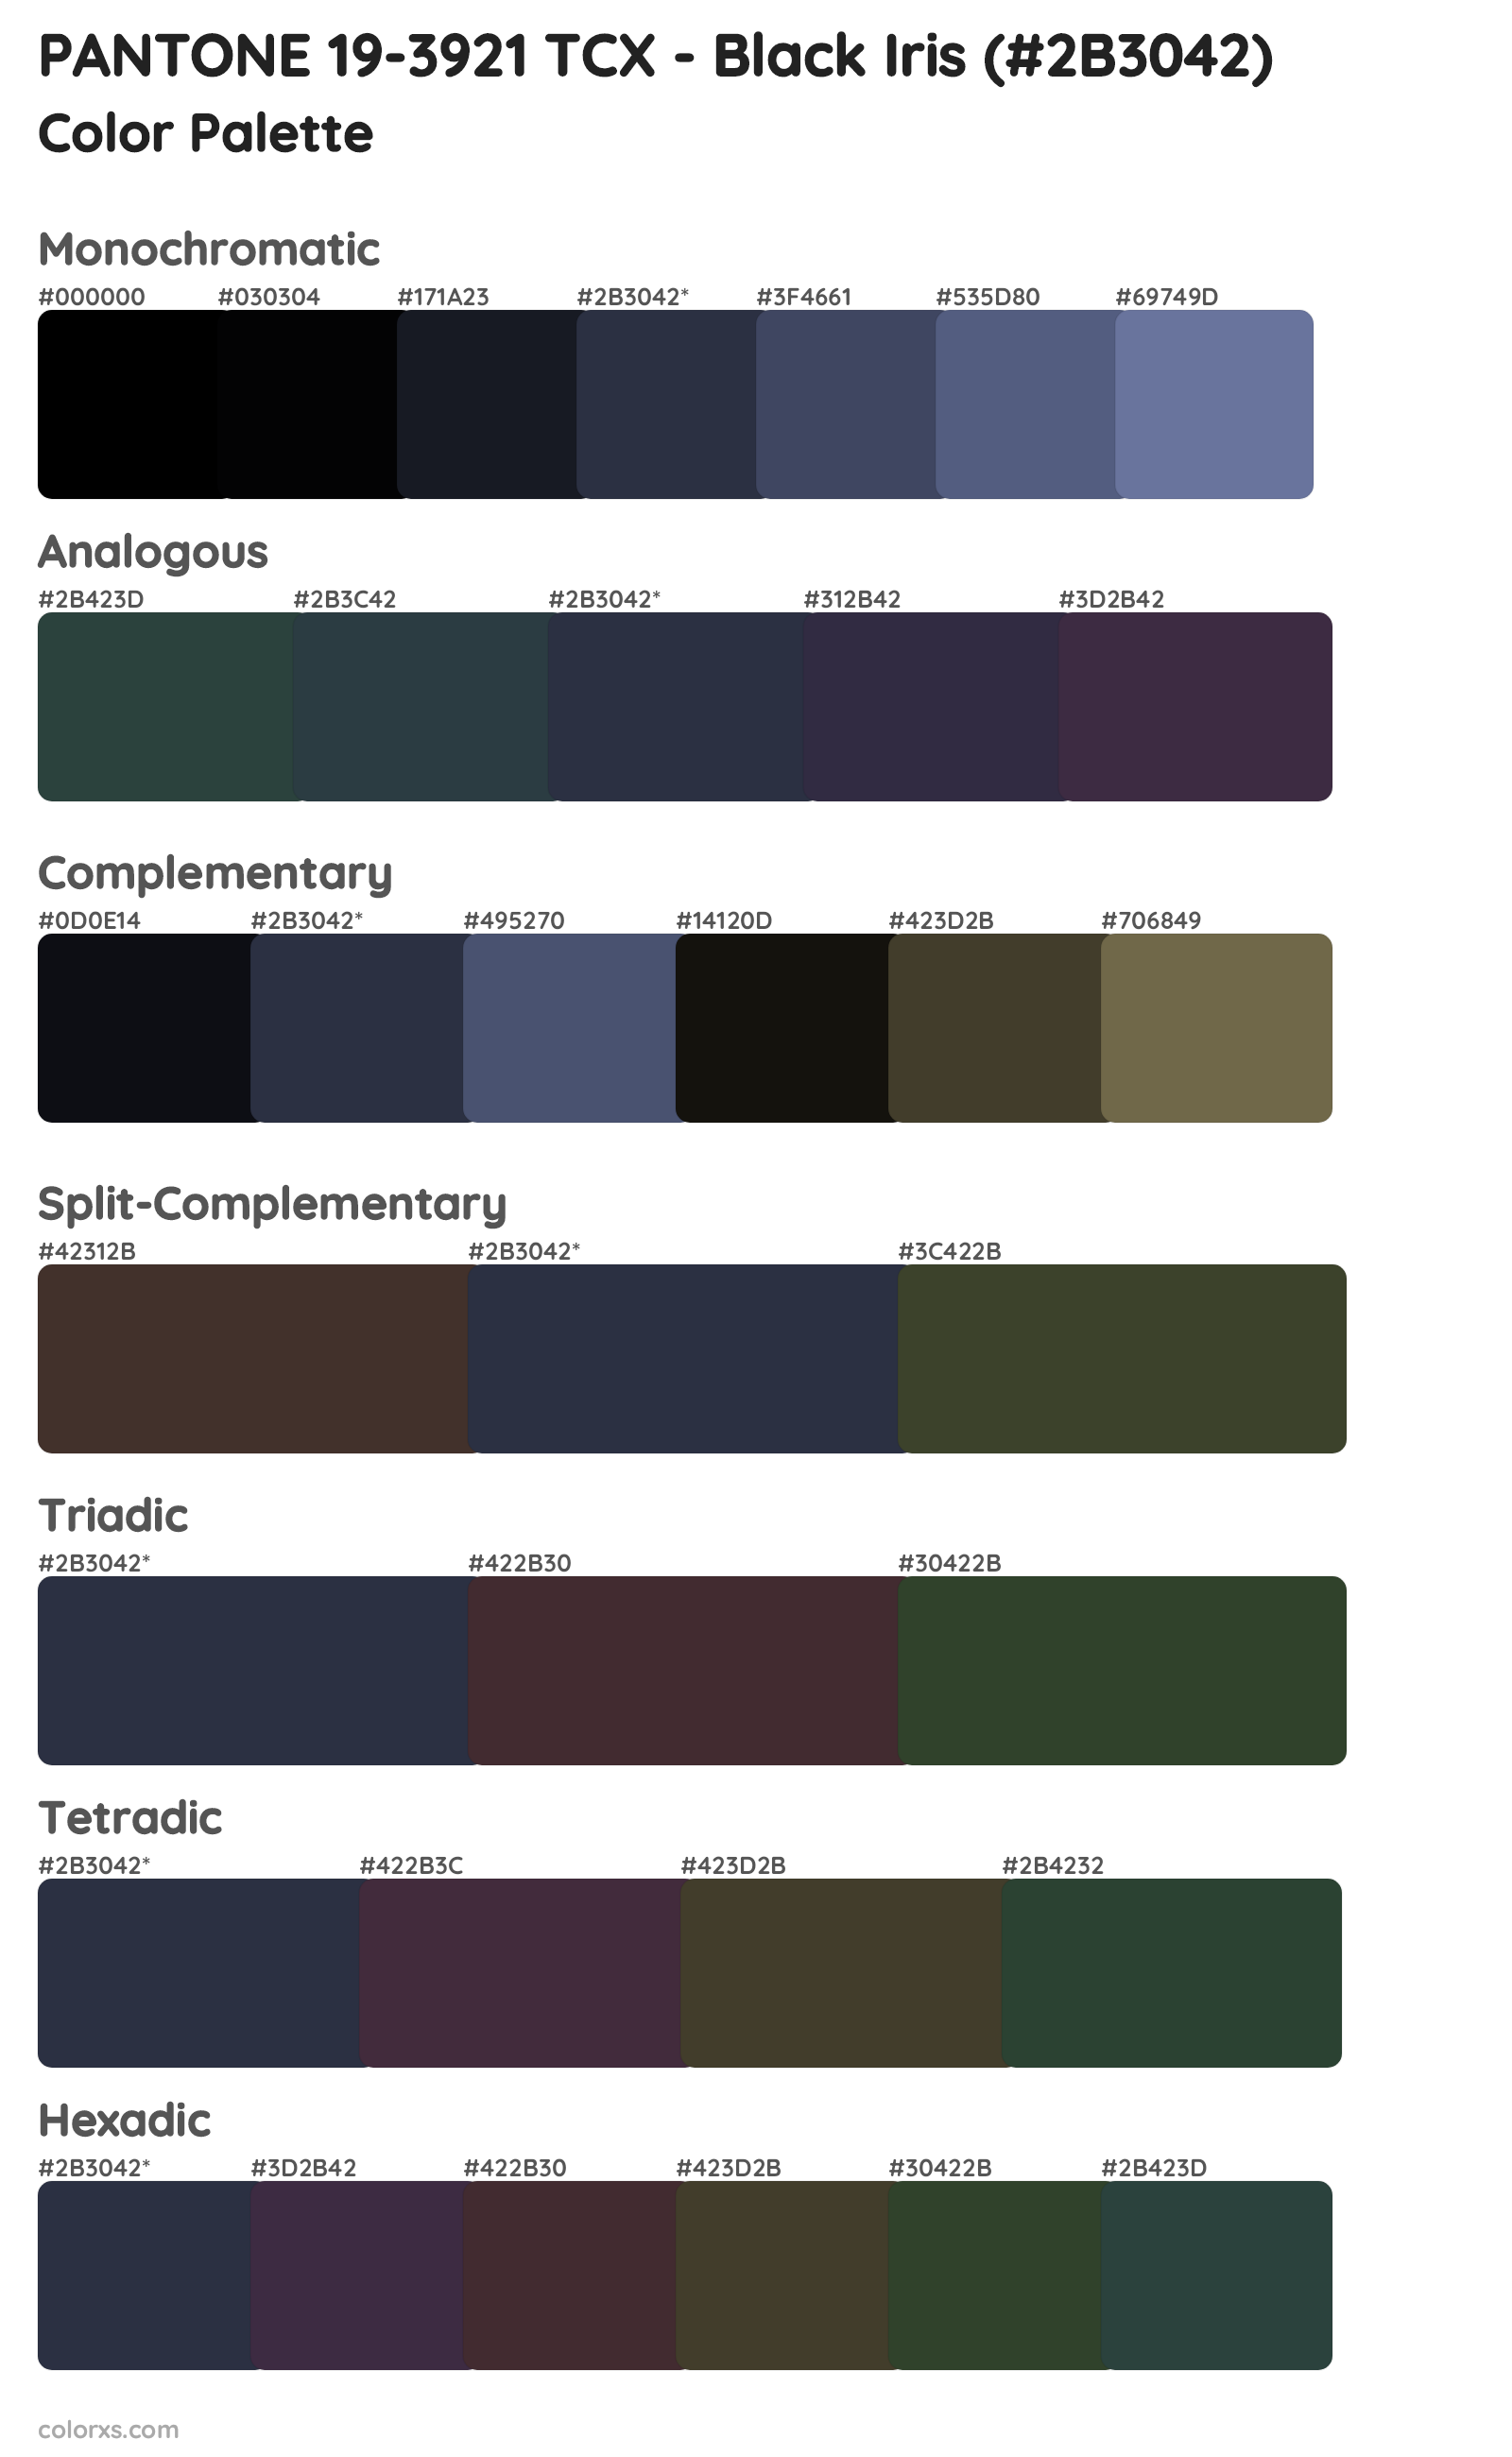 PANTONE 19-3921 TCX - Black Iris Color Scheme Palettes